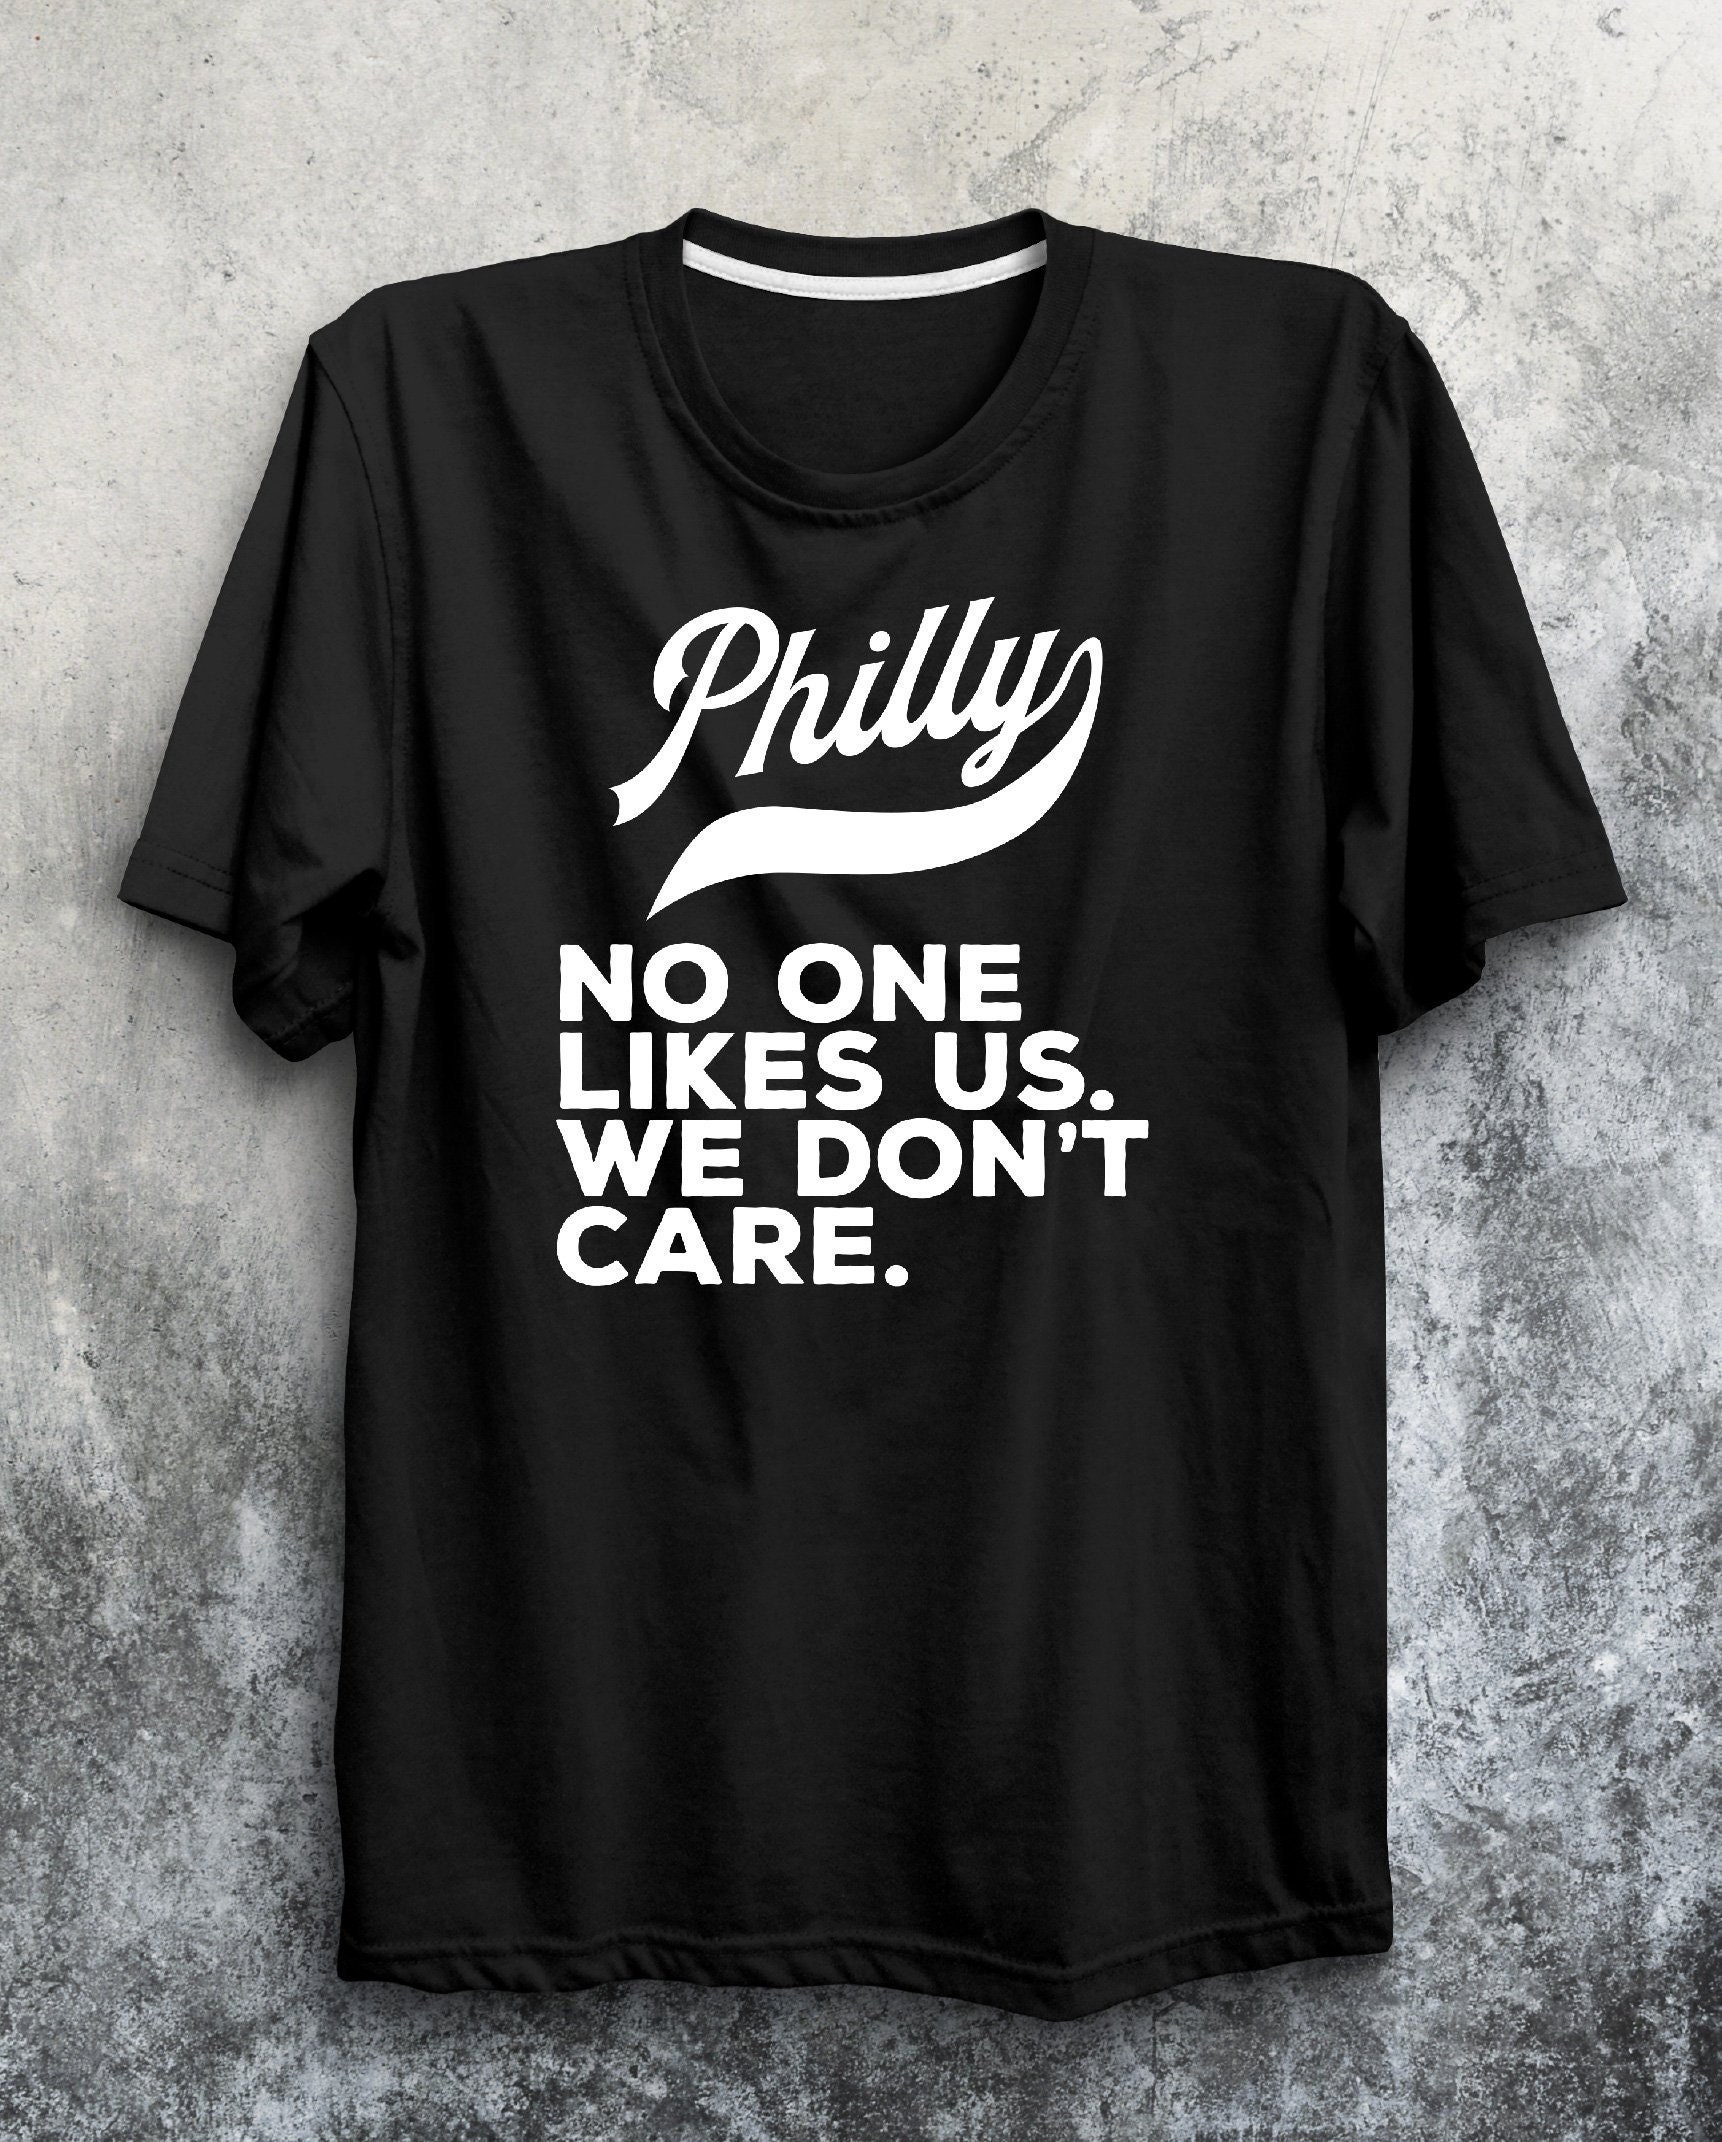 SkylinesDesign Philly Philadelphia Sports No One Likes US We Don't Care Short-Sleeve Unisex T-Shirt